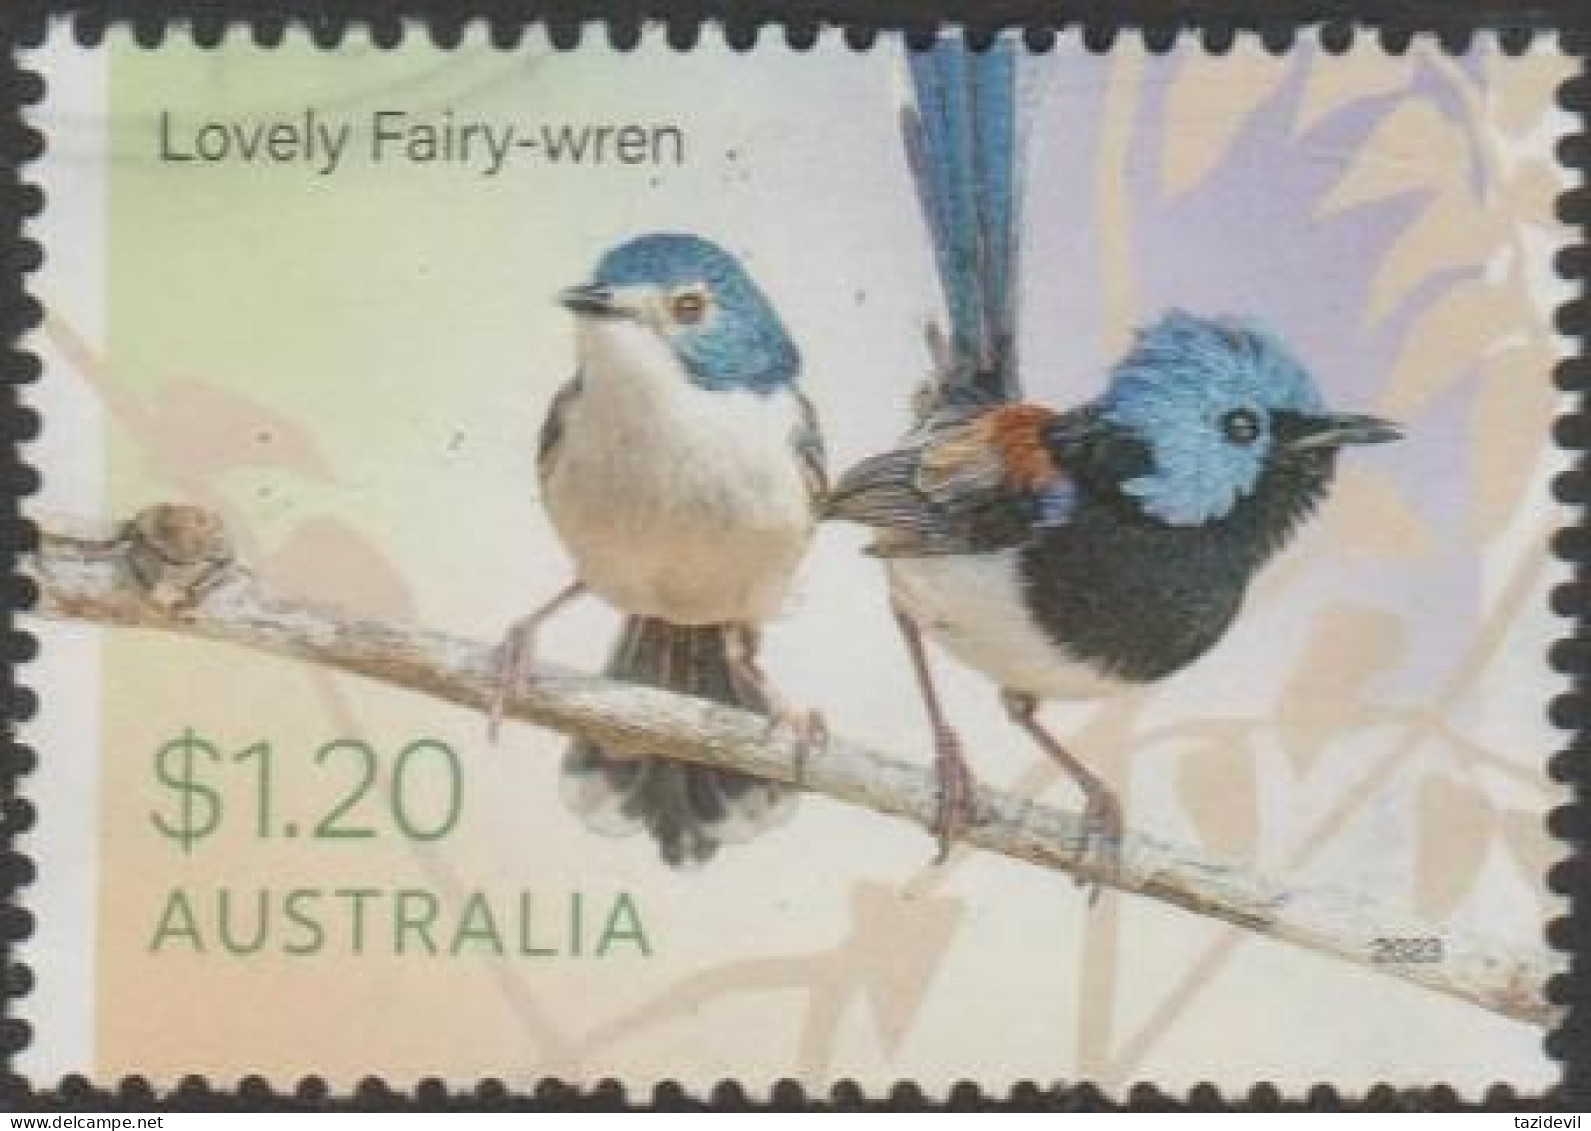 AUSTRALIA - USED 2023 $1.20 Fairy-Wrens - Lovely Fairy-Wren - Usati